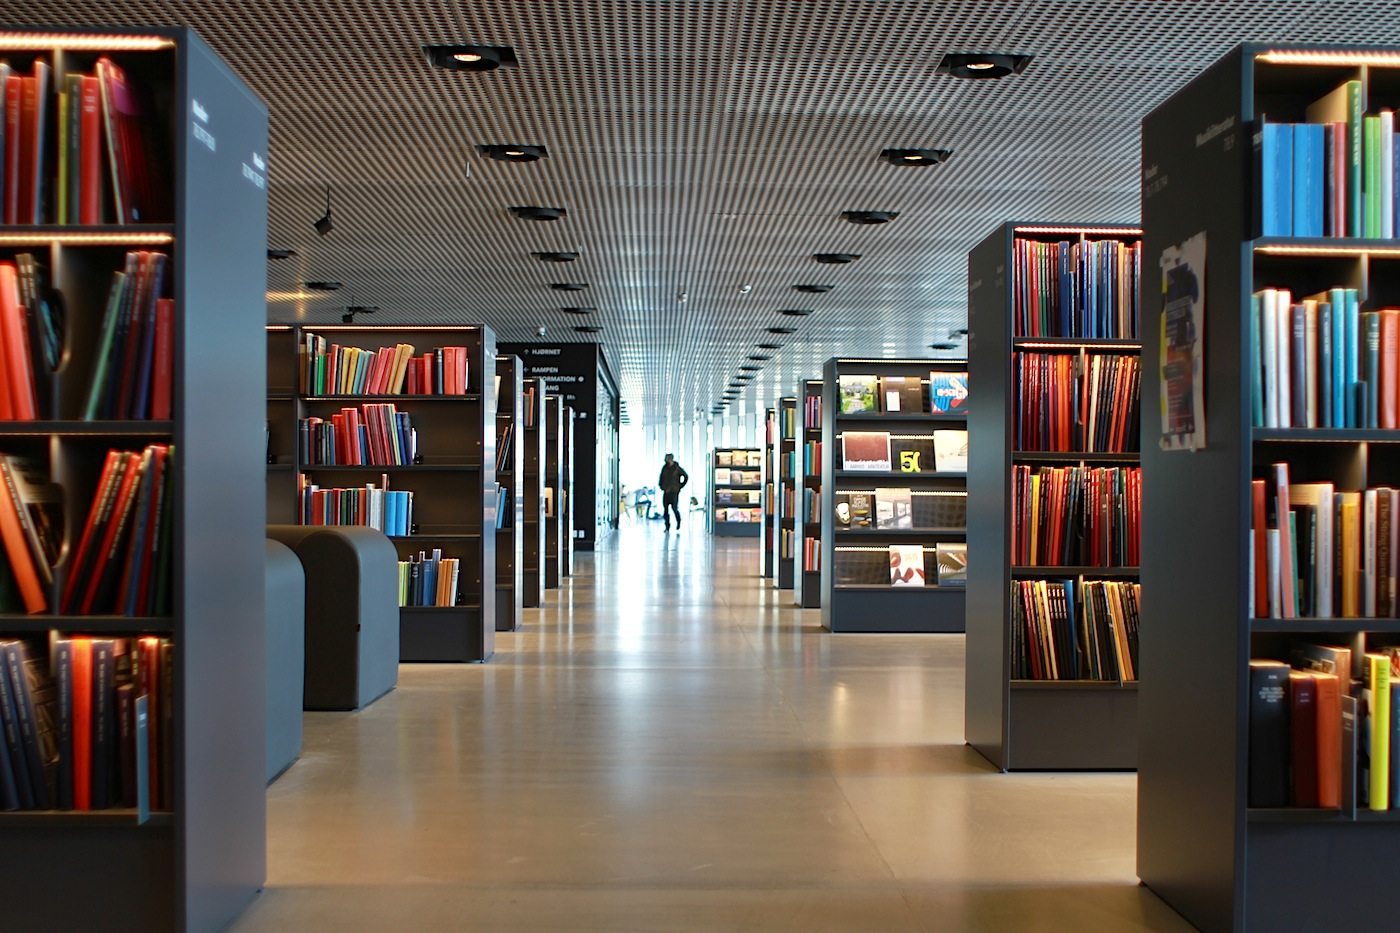 Bibliothek. Das Dokk1 ist unter anderem Bürgeramt, Bürogebäude und beherbergt die größte Bibliothek Skandinaviens.